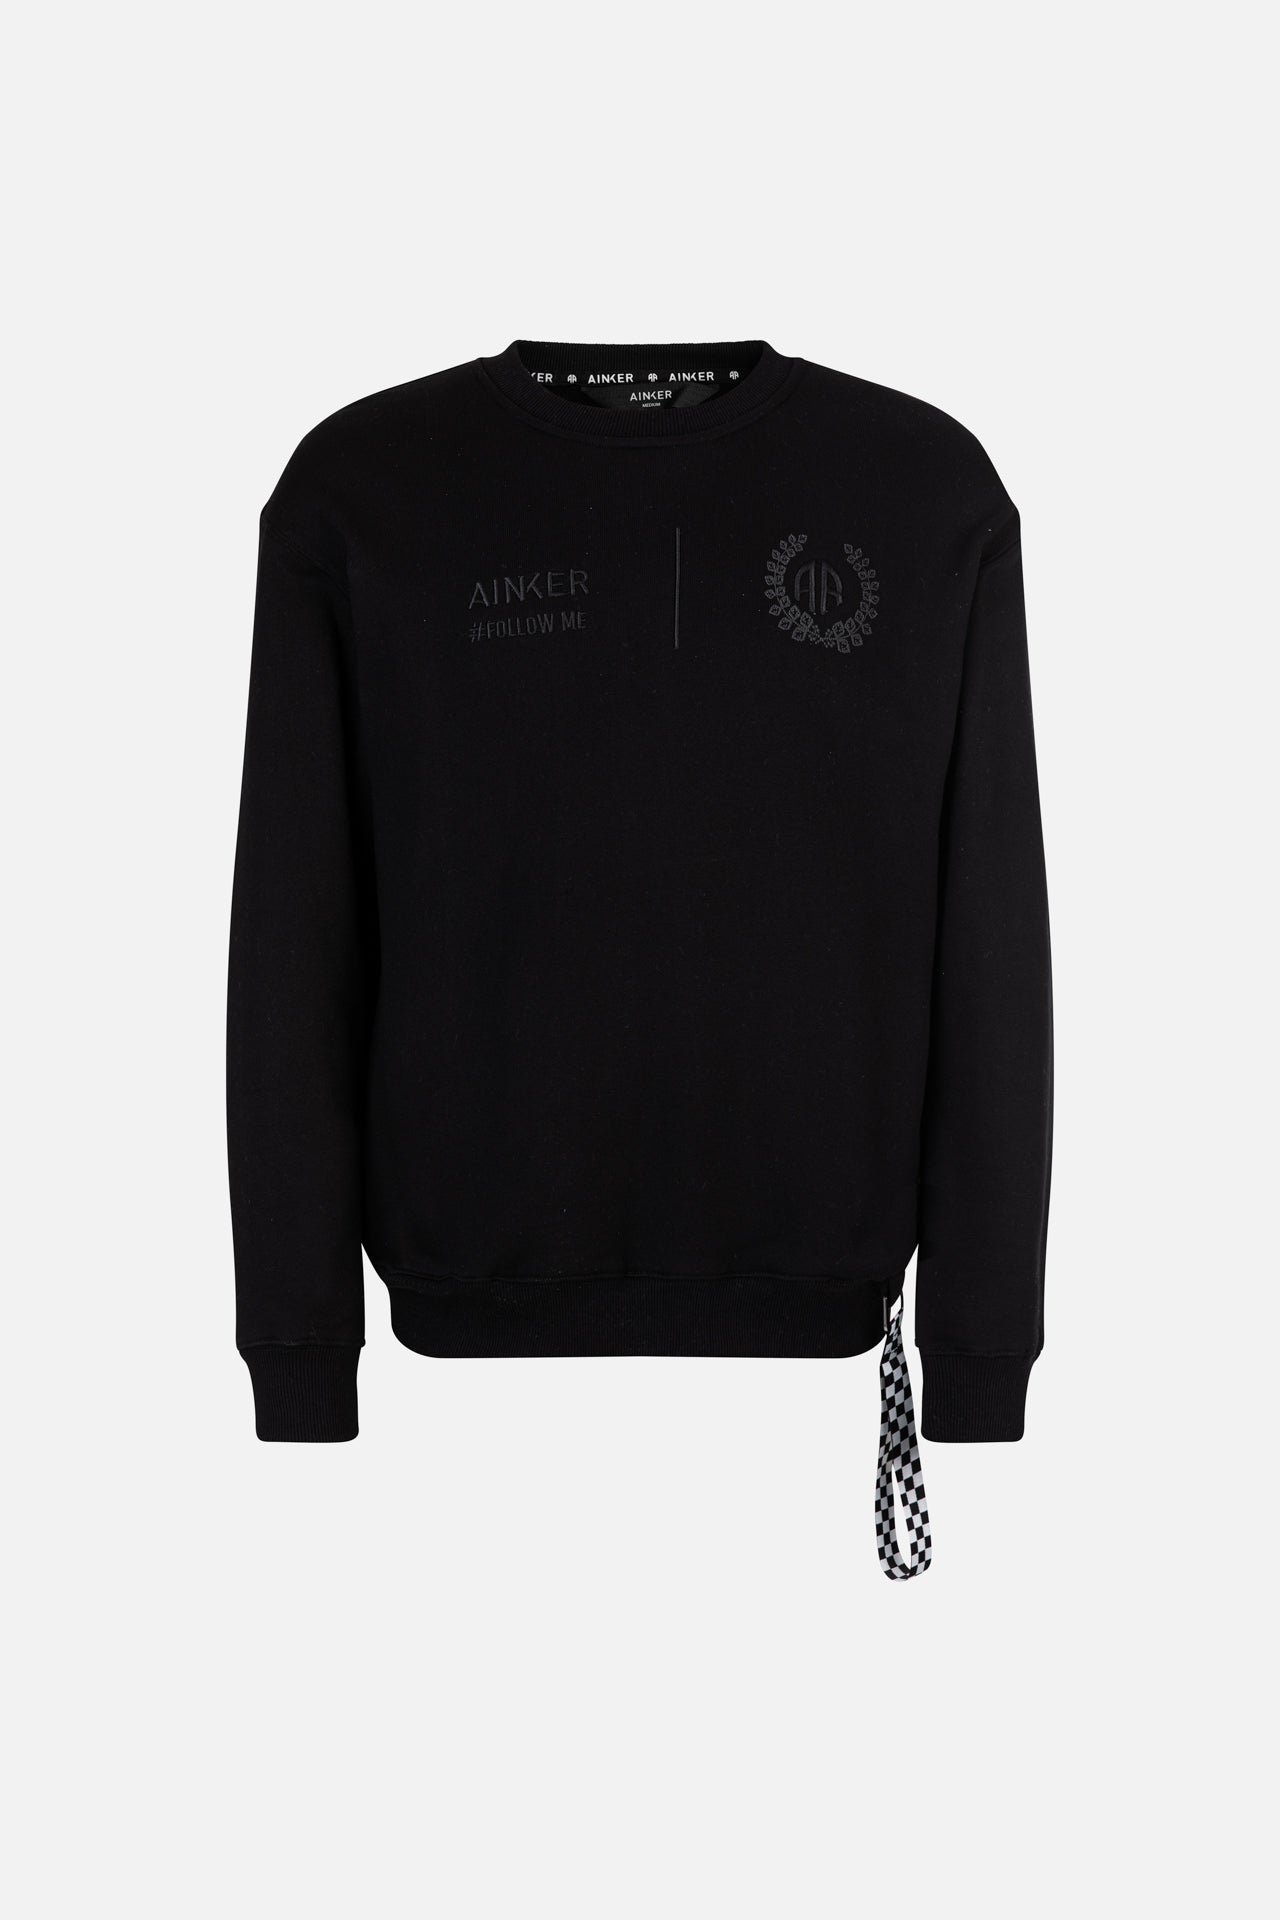 Club Black Sweatshirt